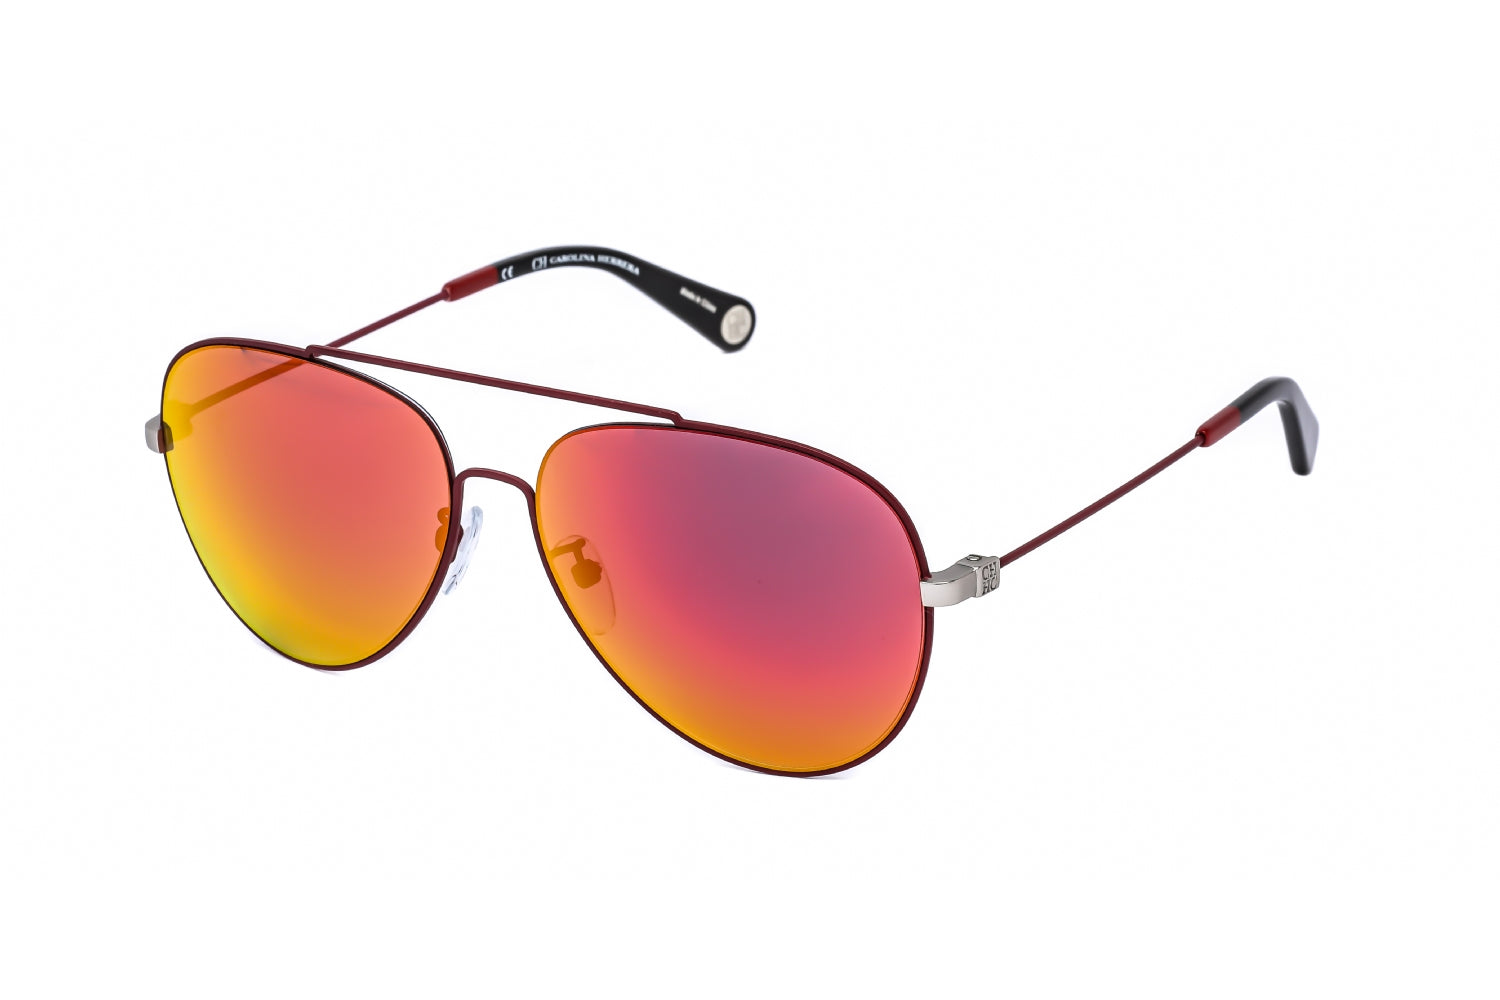 Carolina Herrera sunglasses – Sun Chic Boutique